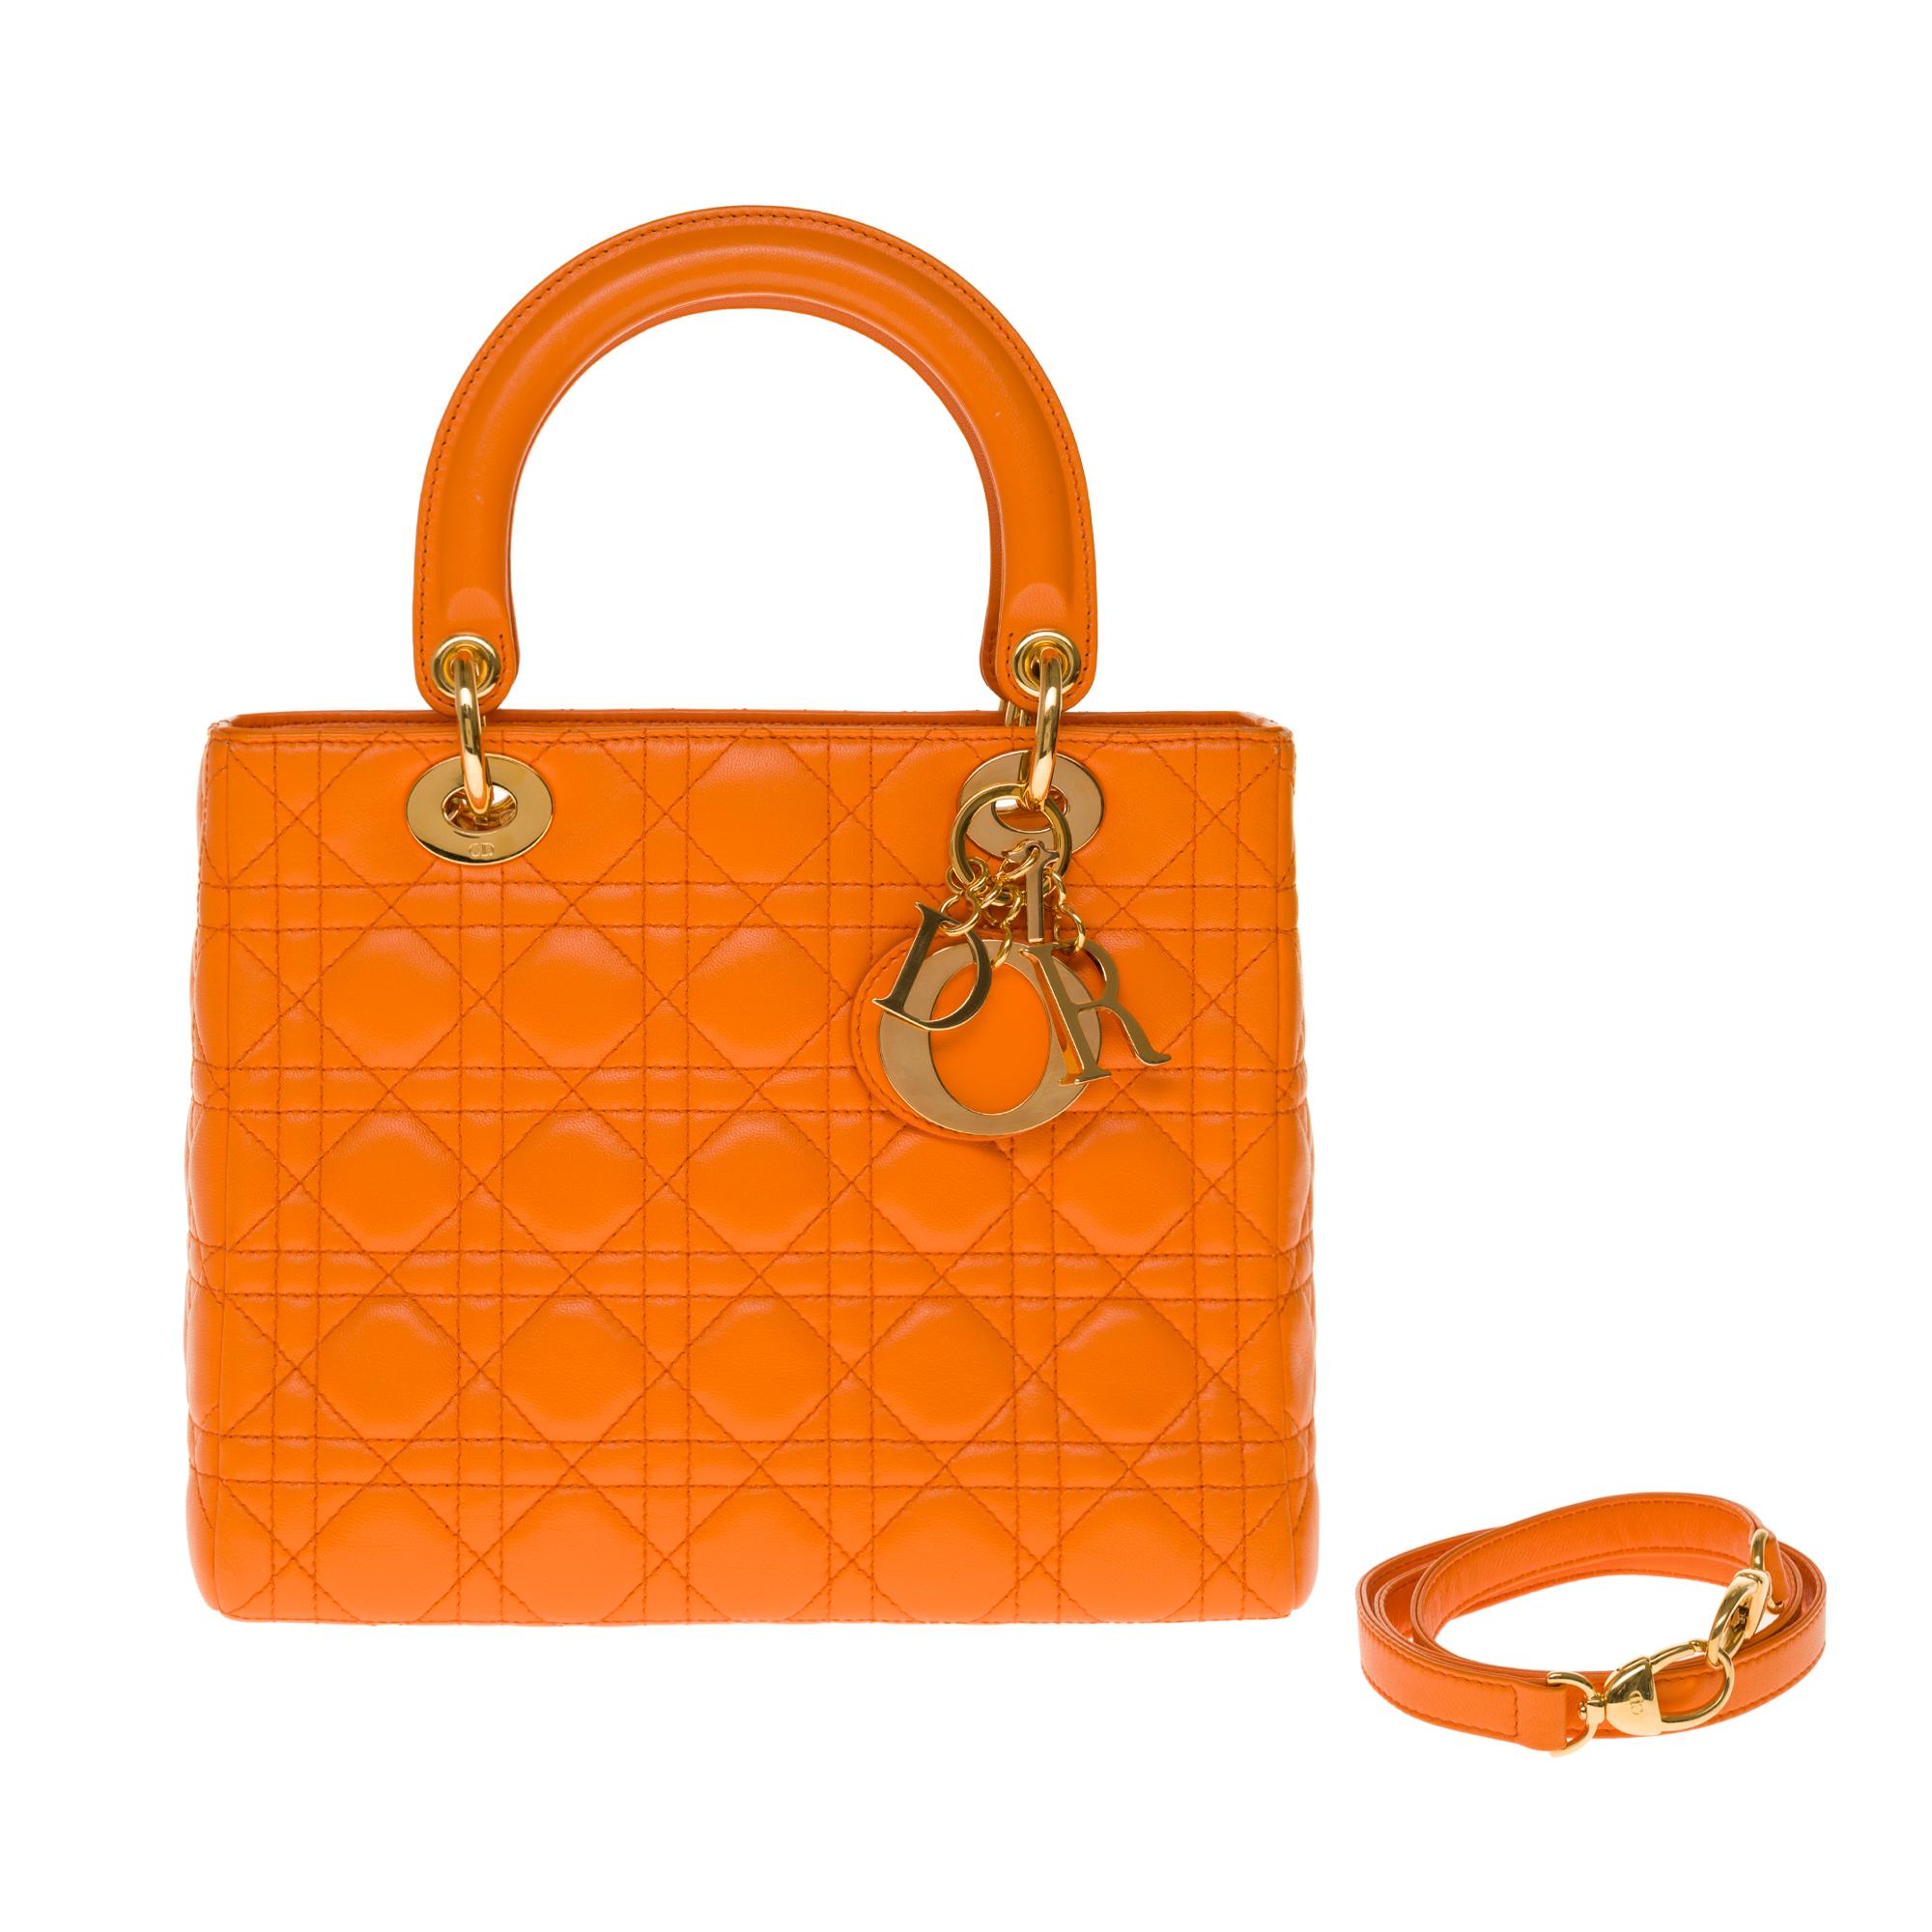  Christian Dior Lady Dior Medium size handbag in Pumpkin cannage leather, GHW 3